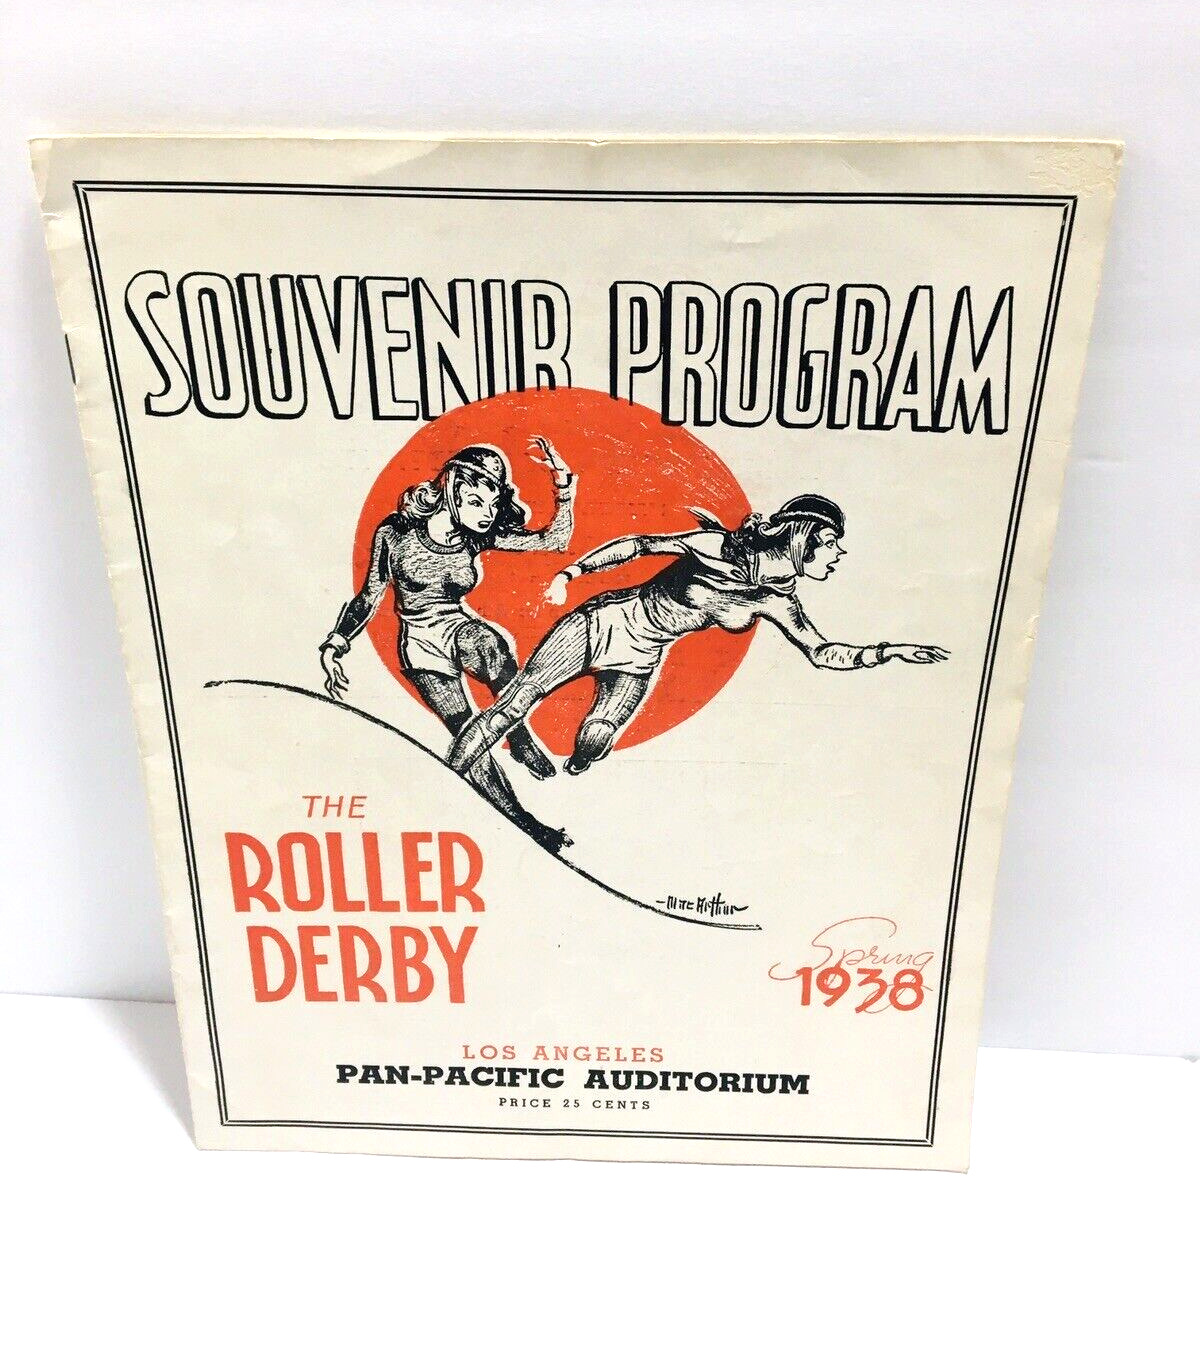 The Roller Derby Souvenir Program 1938 Los Angeles Pan-Pacific Auditorium Gone